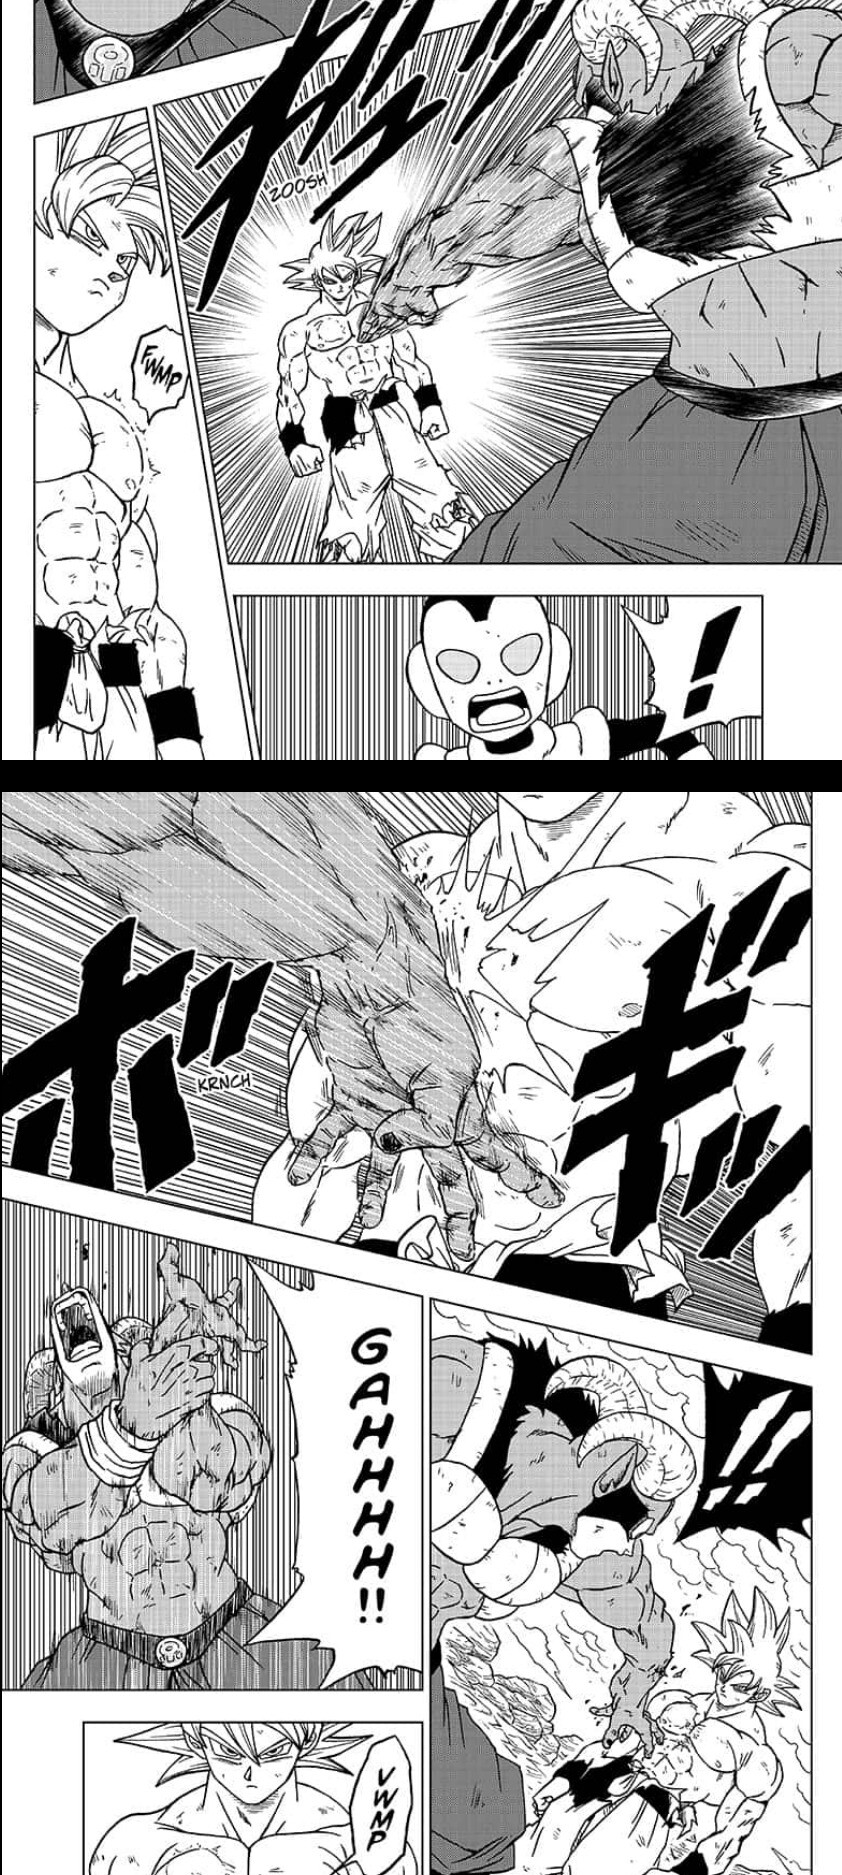 Dragon Ball Super lässt Son Goku die Vorzüge der Ultra Instinkt-Technik voll und ganz ausschöpfen (Quelle: MangaPlus).